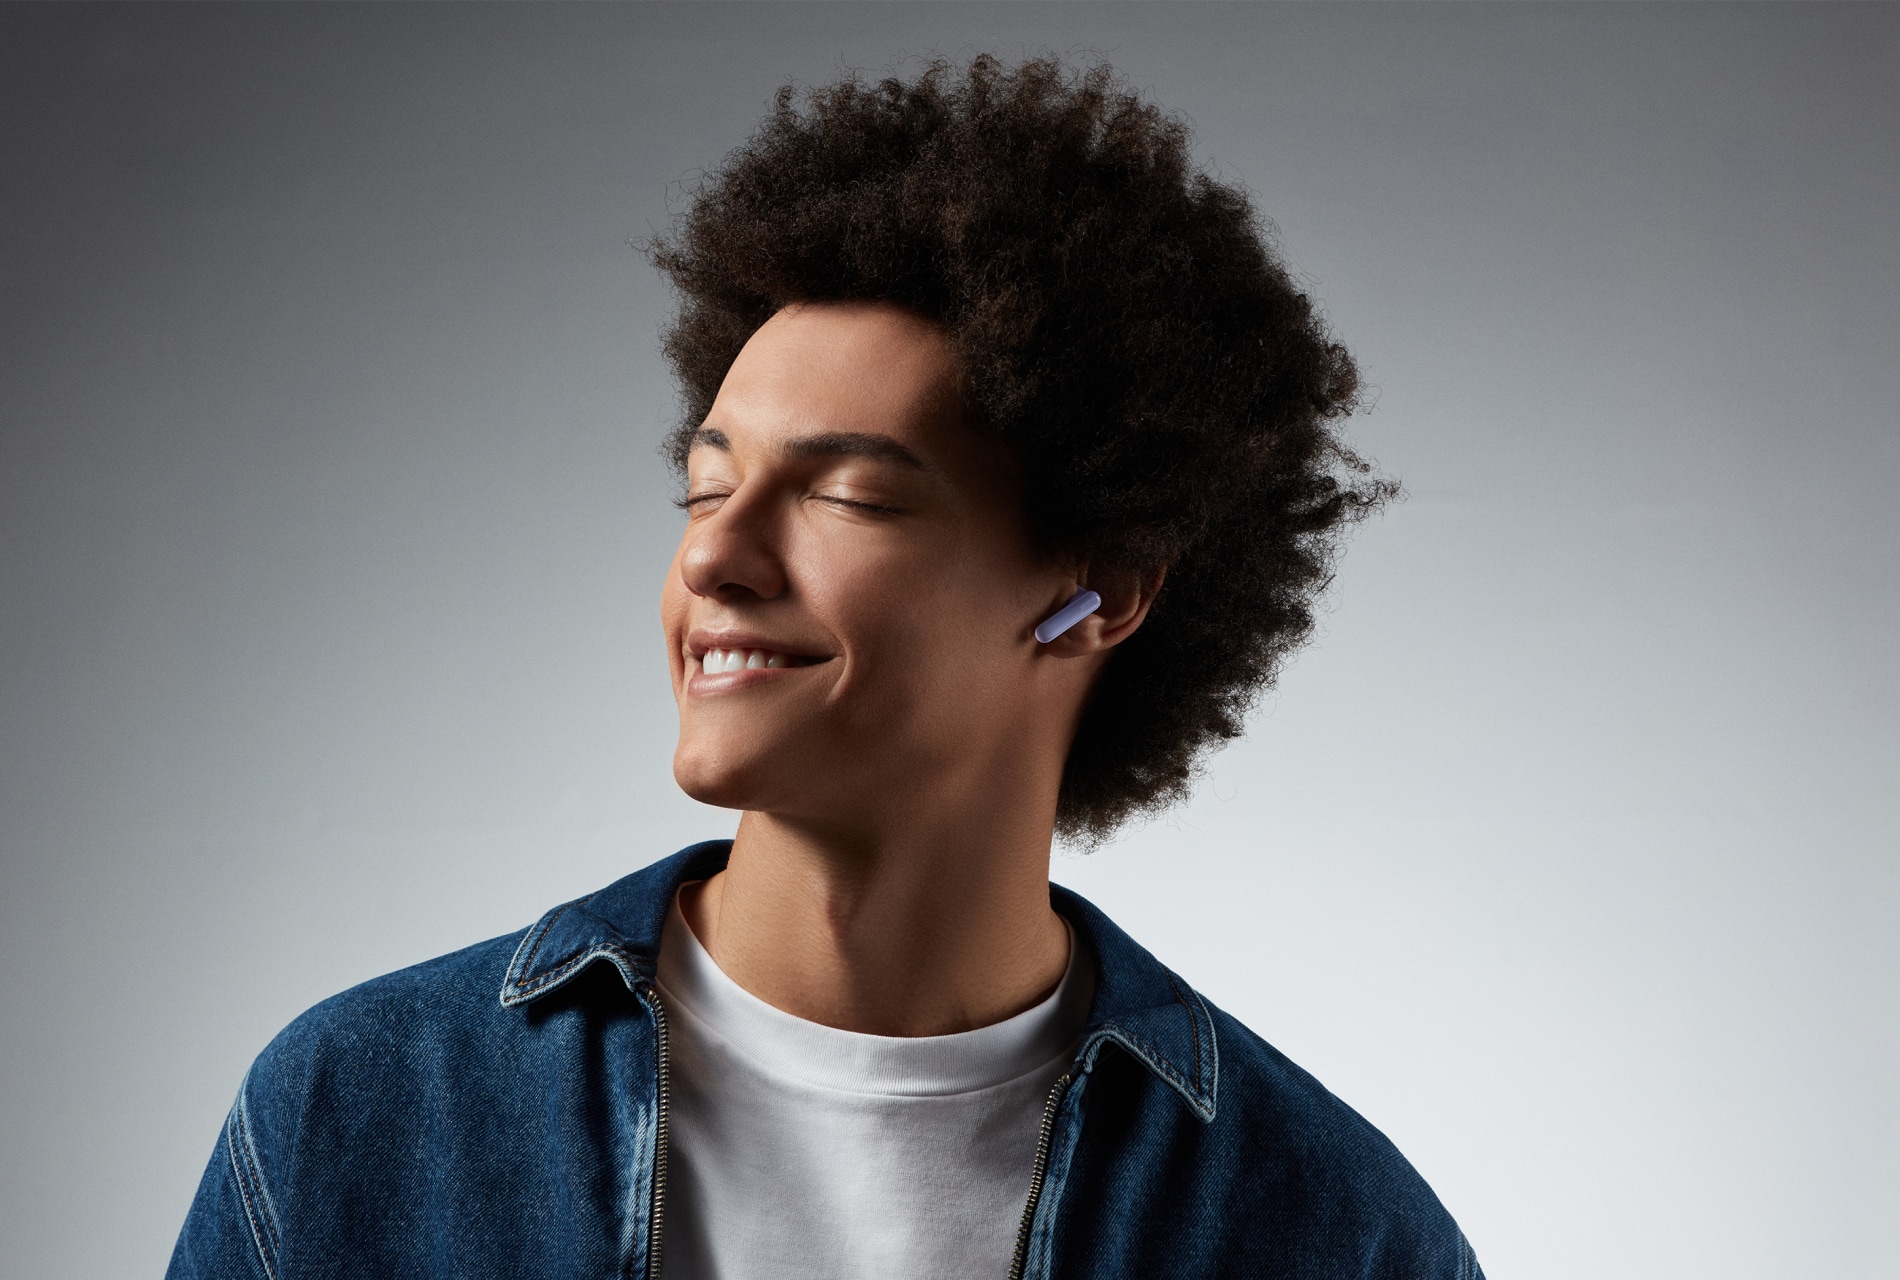 Auriculares Bluetooth Oppo Enco Air 3 - Sonido envolvente